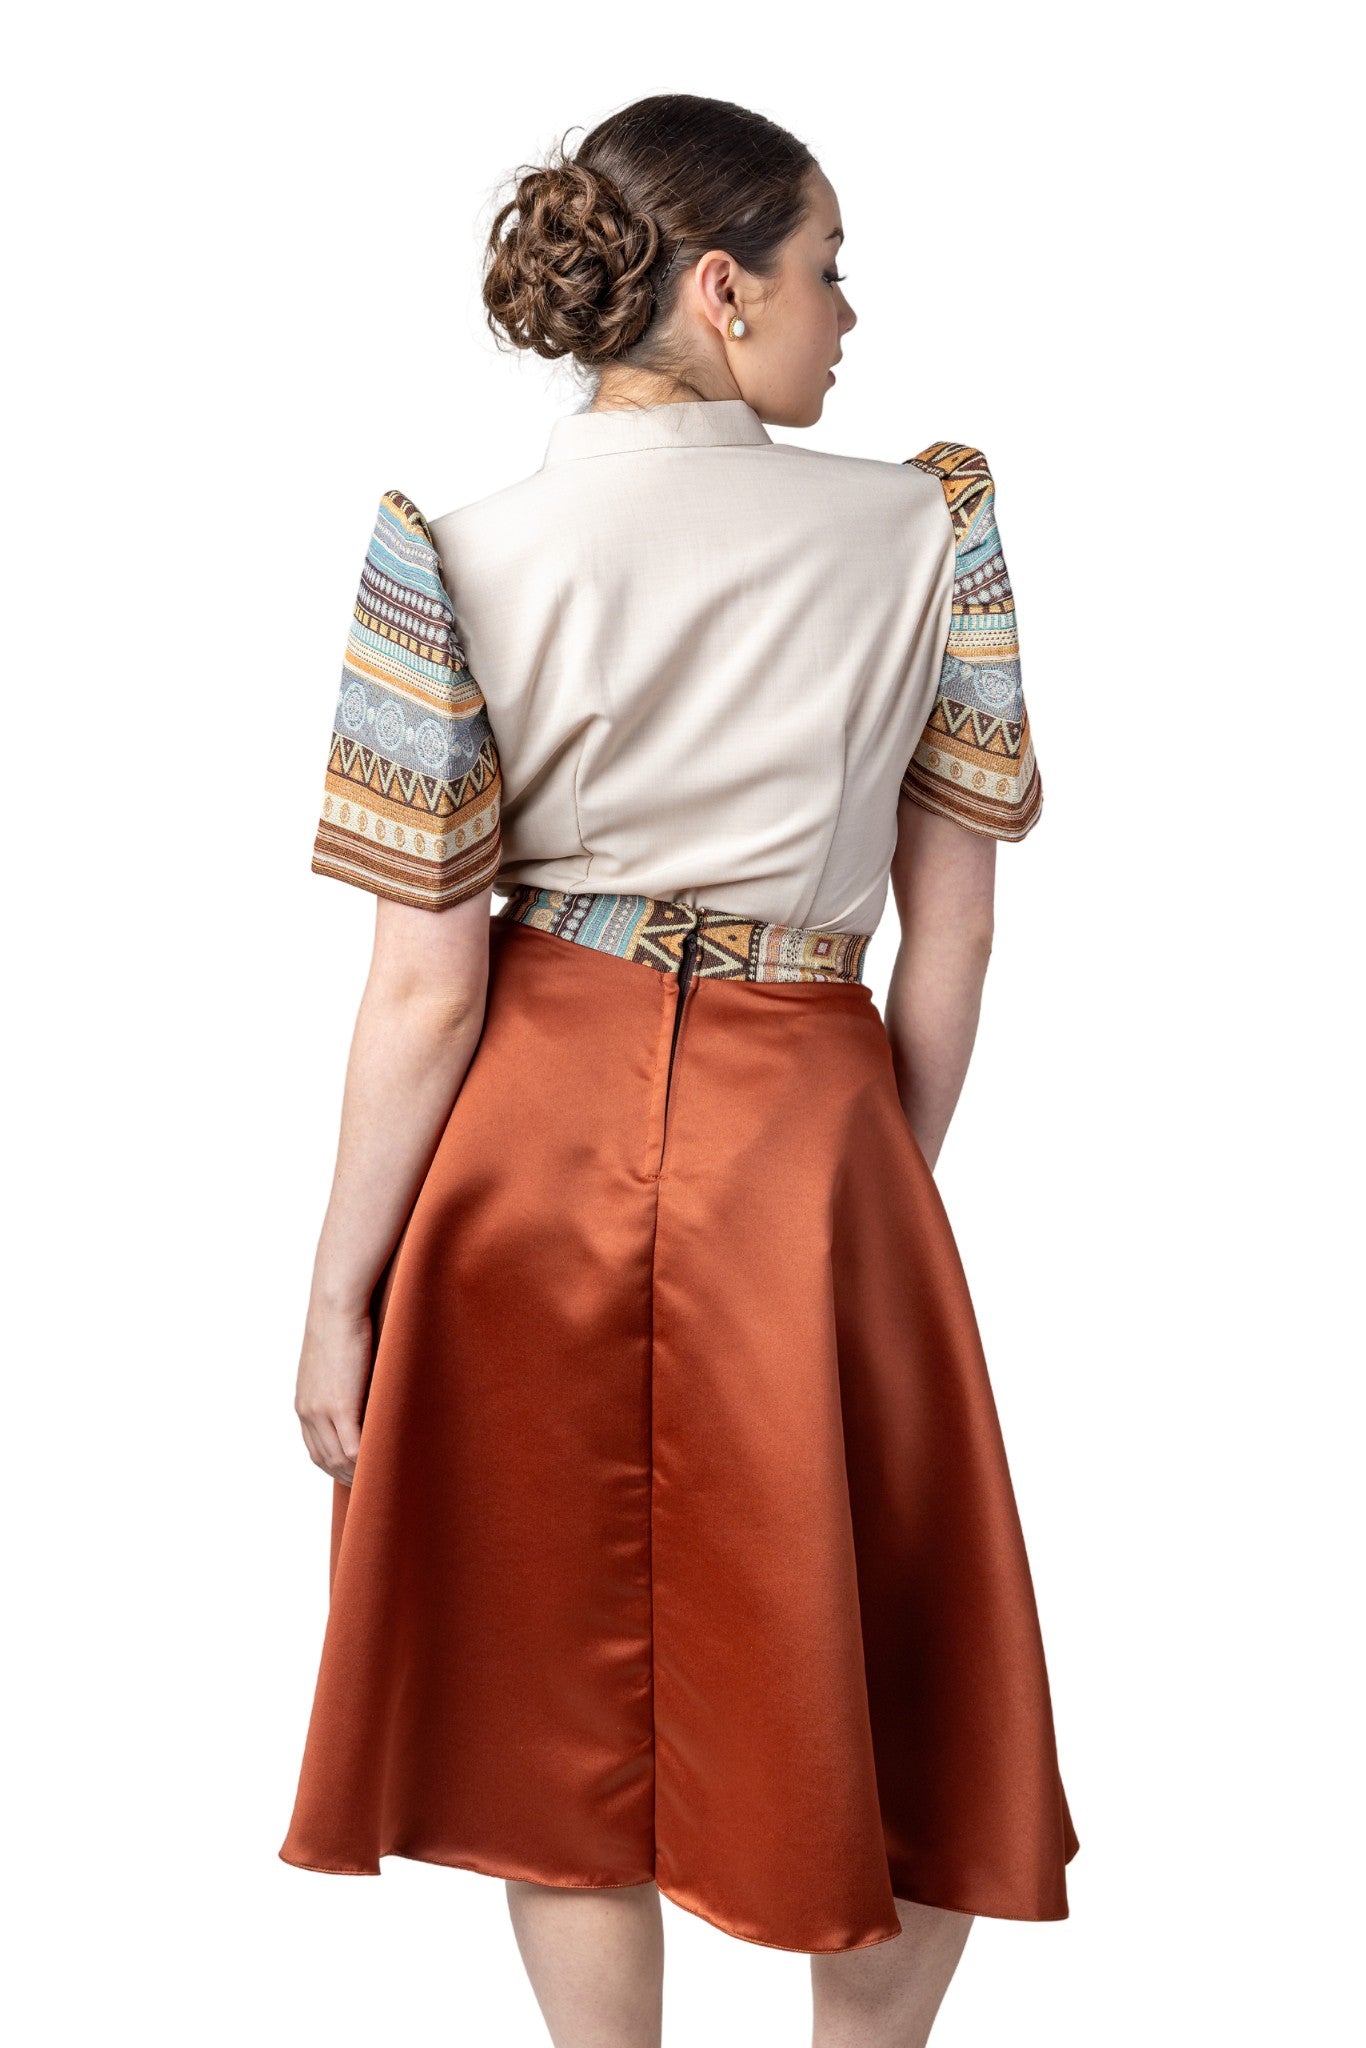 Barong Warehouse - WS22 - Baro't Saya Ethnic Filipiniana Copper - Blouse and Skirt Set